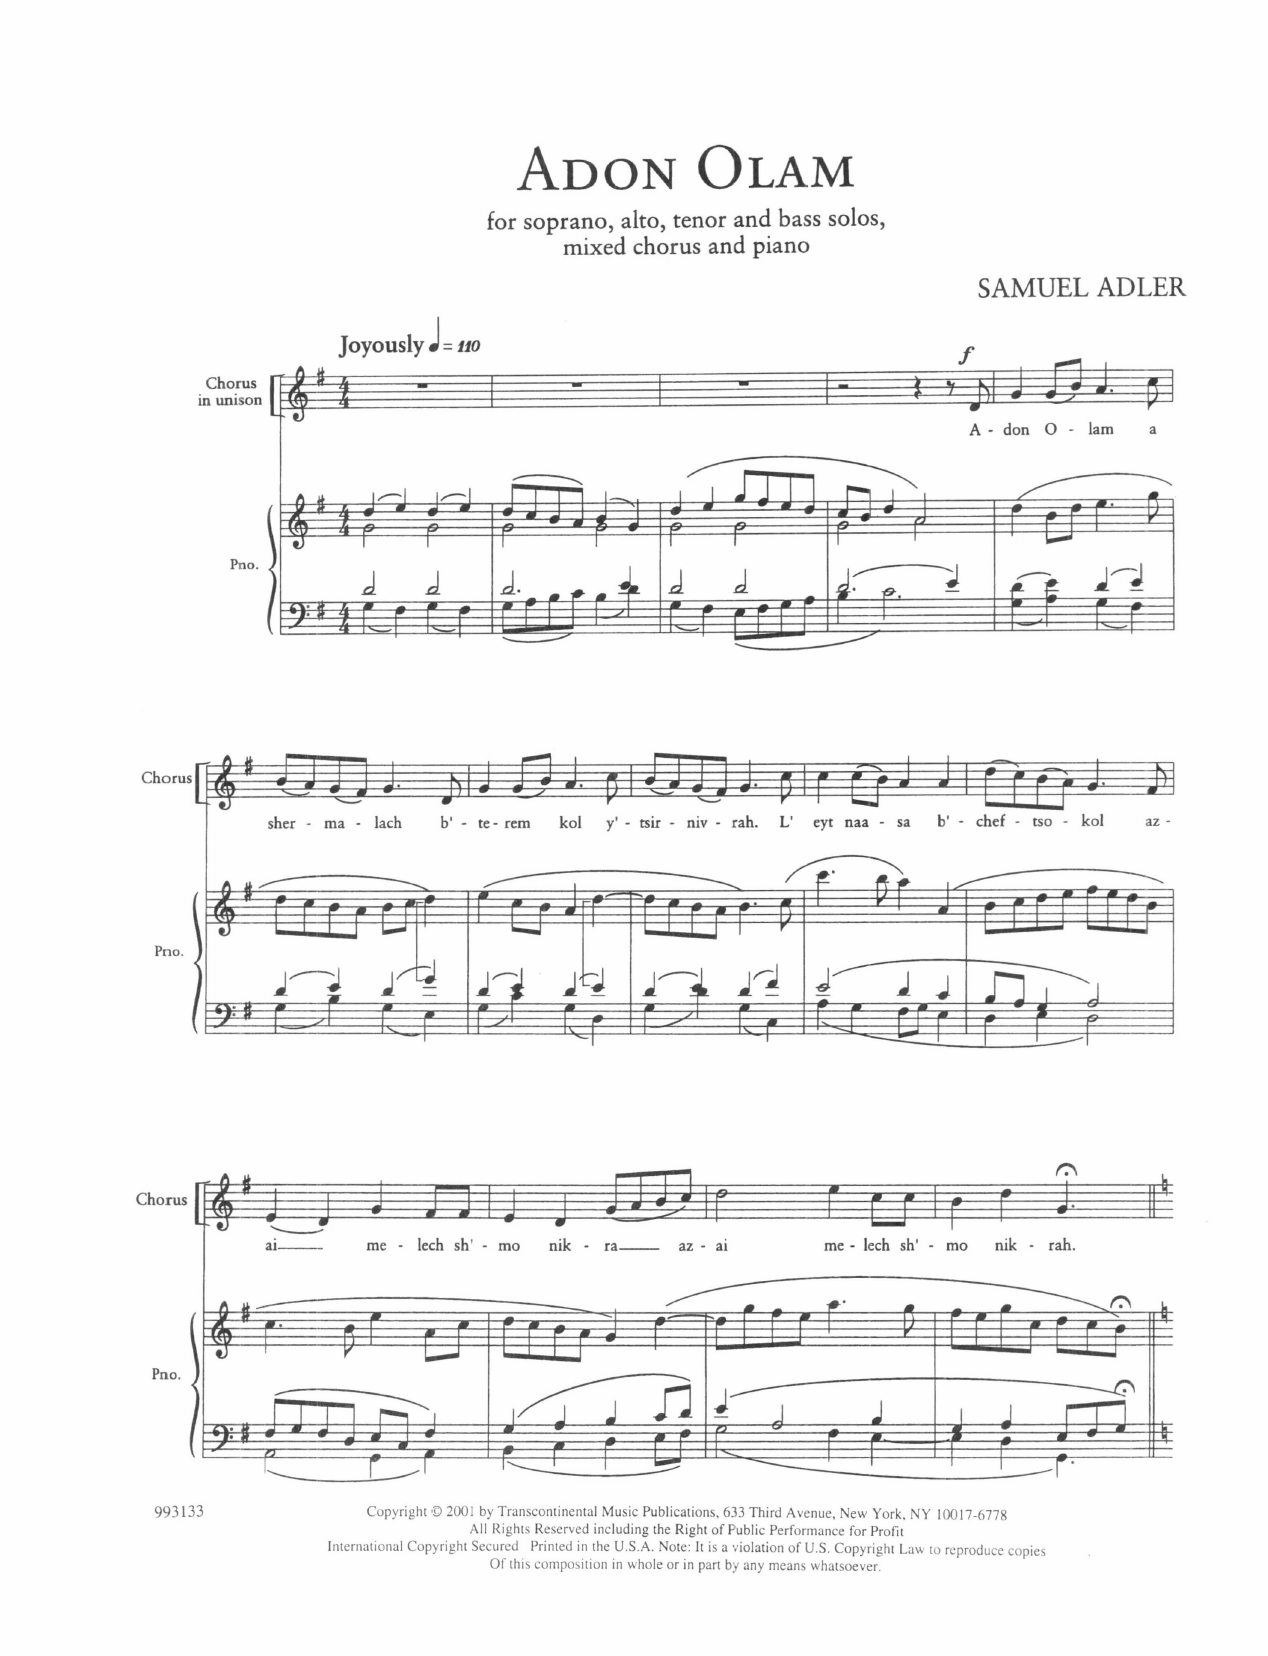 Download Samuel Adler Five Sephardic Choruses: Adon Olam Sheet Music